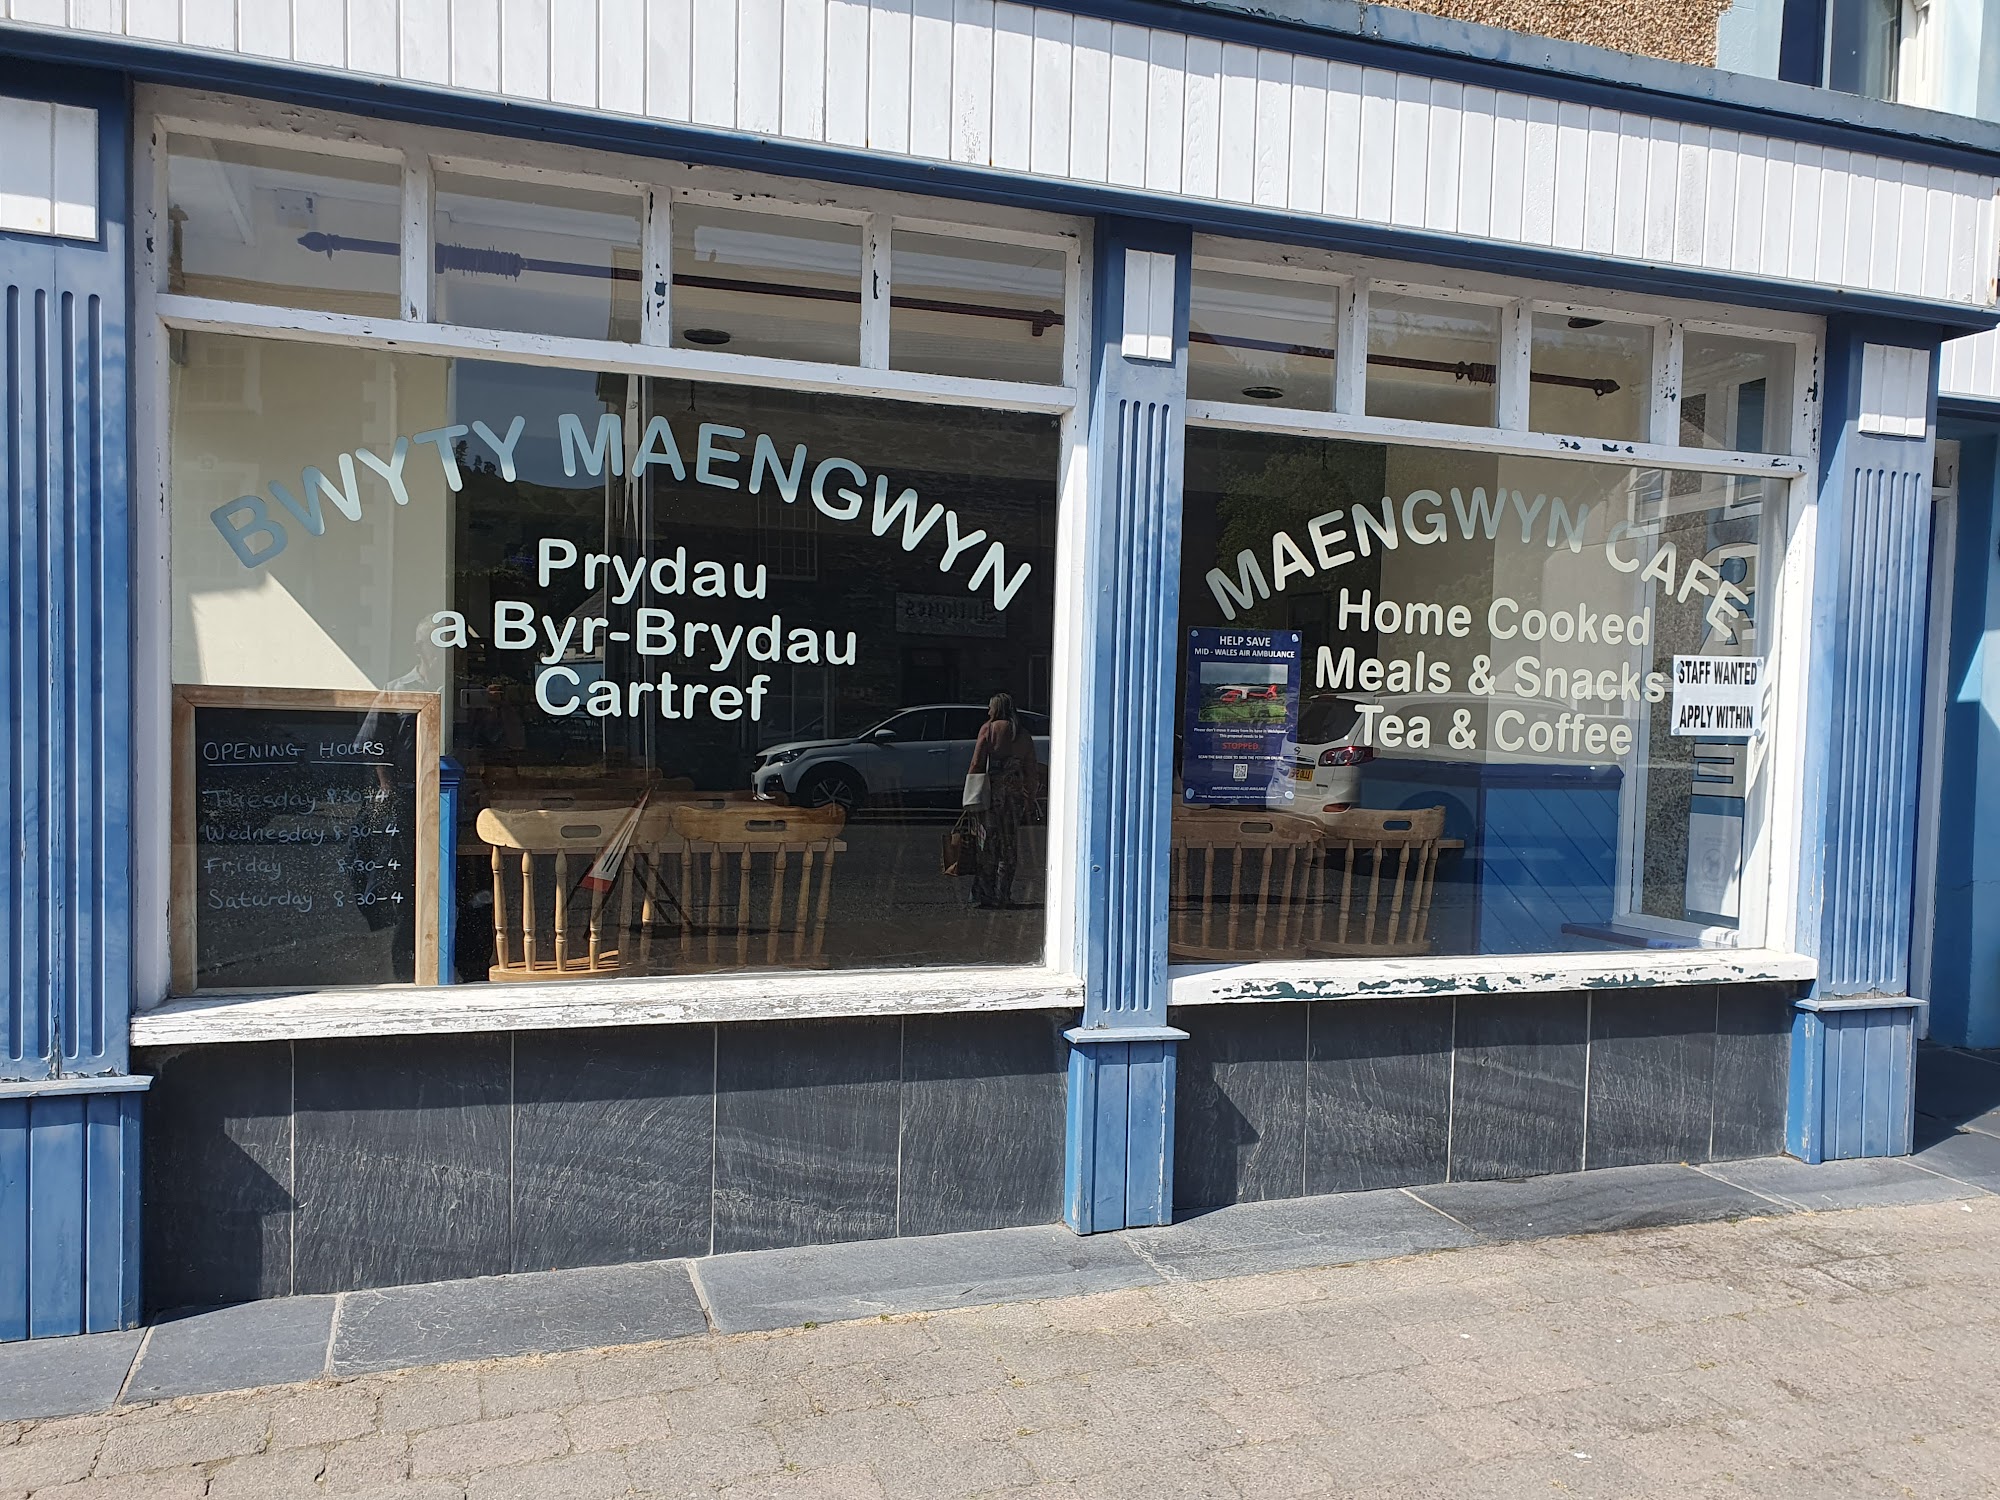 Maengwyn Cafe - Bwyty Maengwyn